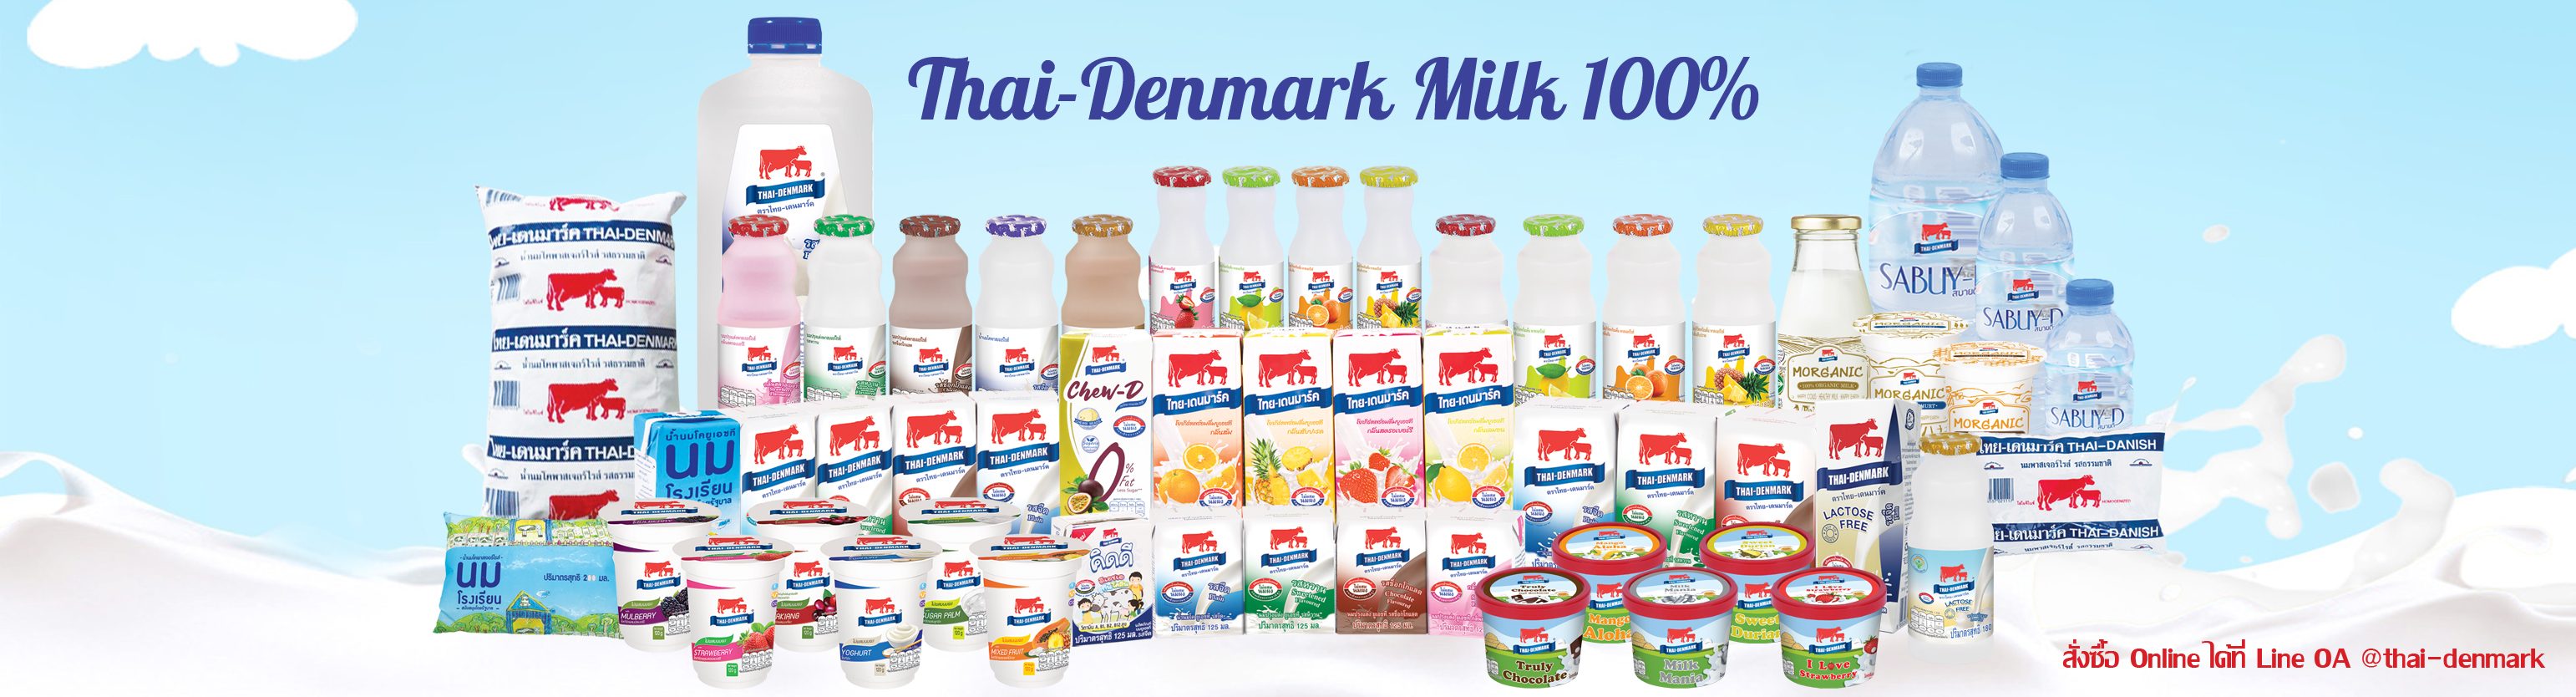 ผลิตภัณฑ์นมไทย-เดนมาร์ค นมโคแท้ 100%